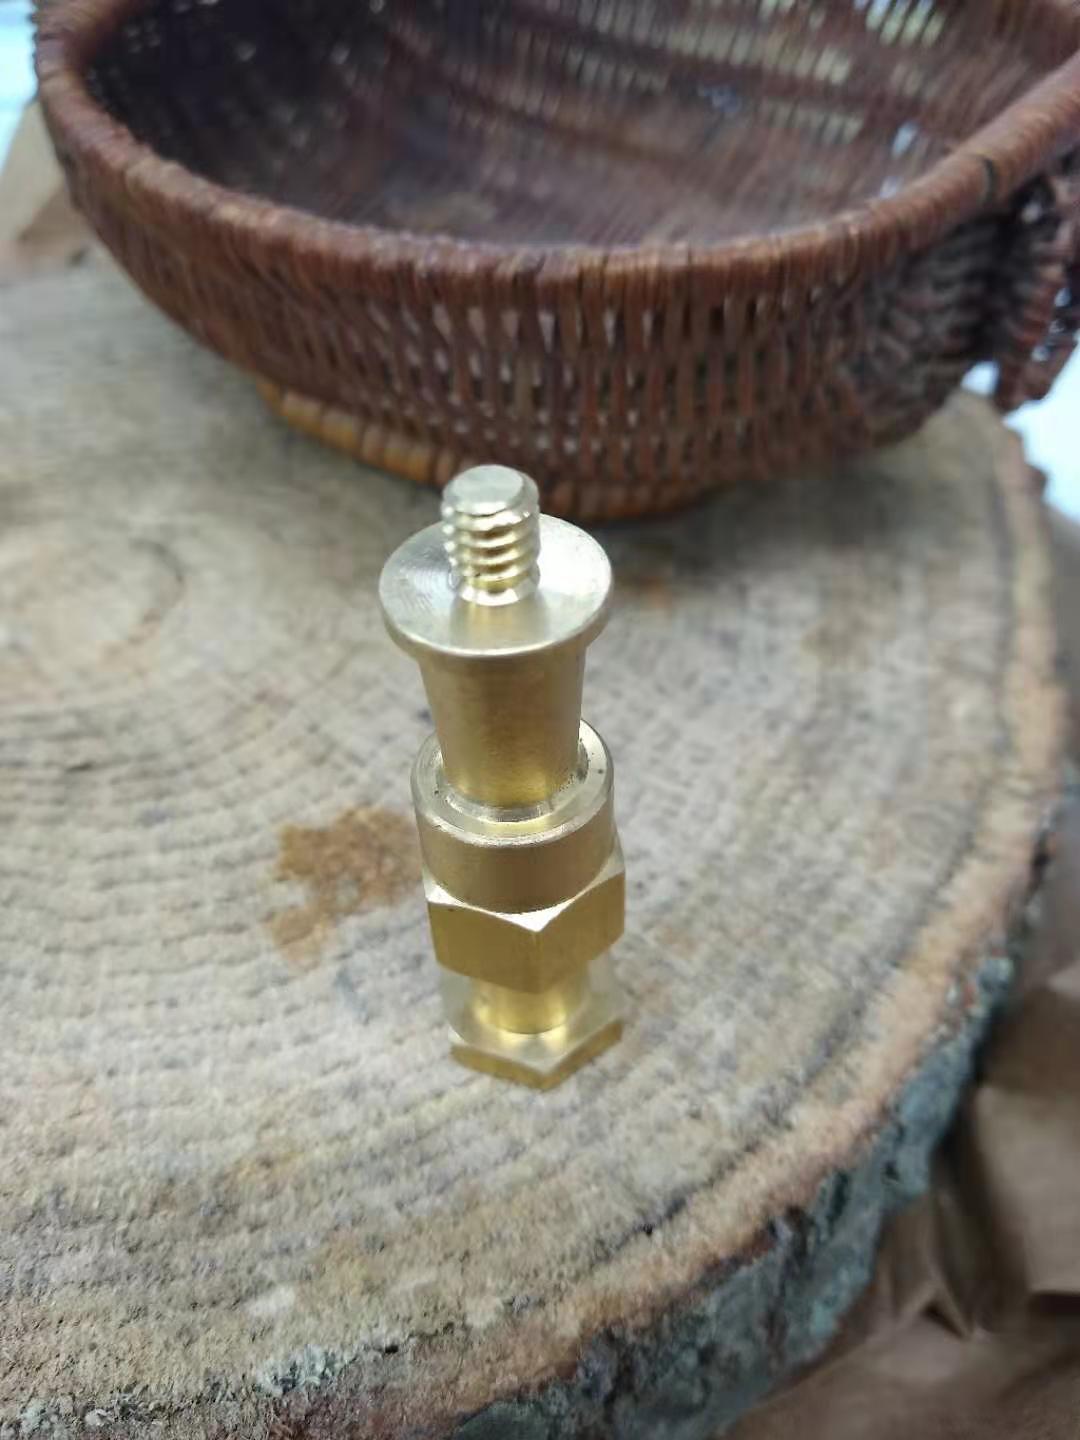 A brass tap.